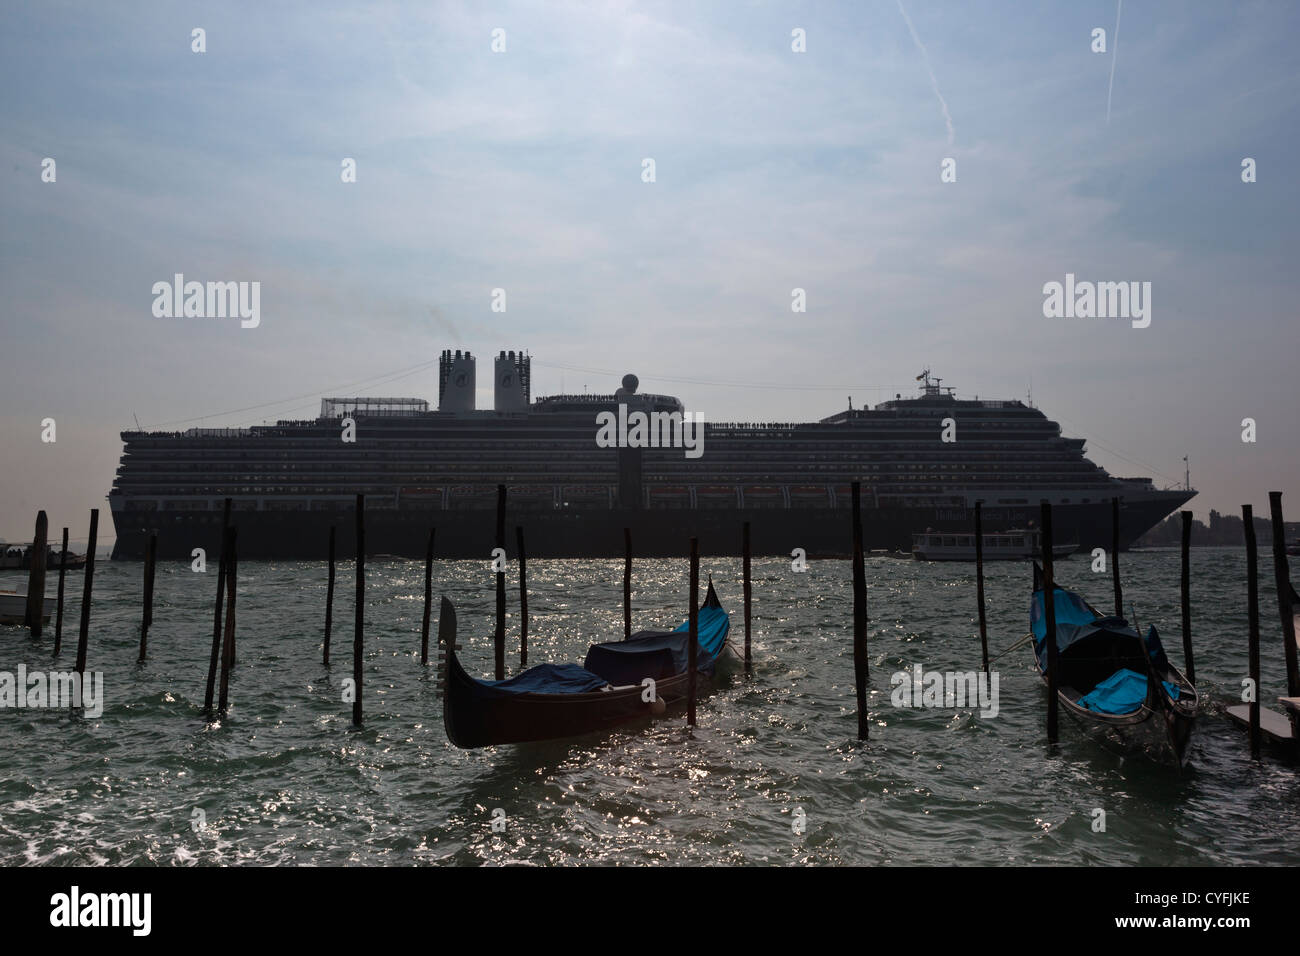 L'arrivée des bateaux de croisière à Venise, en passant devant deux gondoles amarrées Banque D'Images